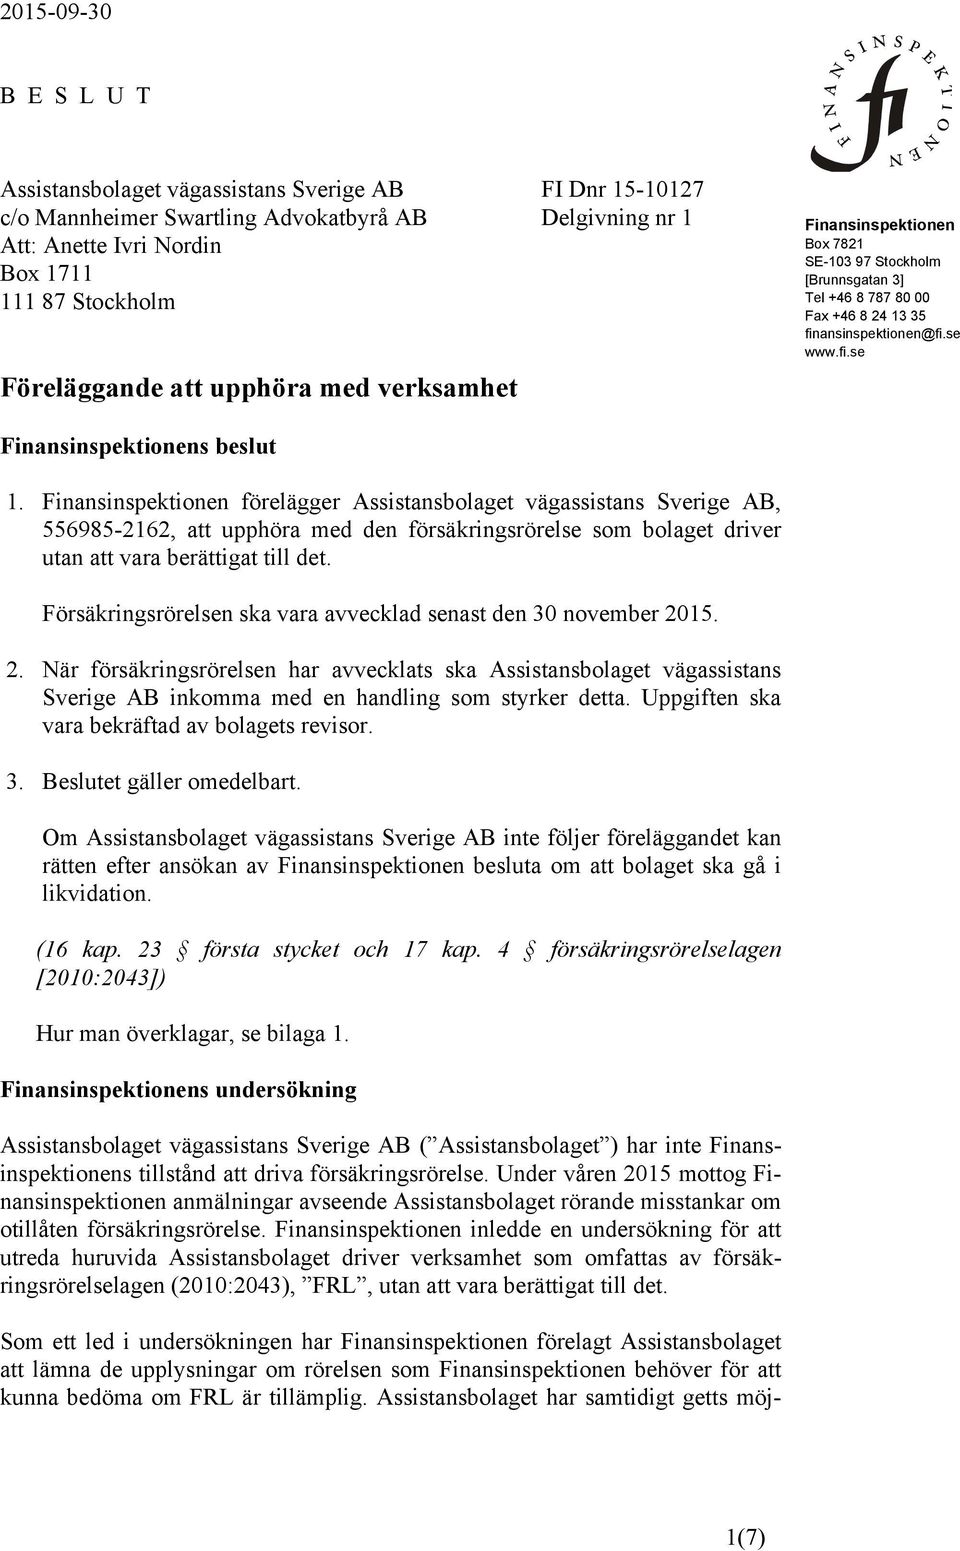 Finansinspektionen förelägger Assistansbolaget vägassistans Sverige AB, 556985-2162, att upphöra med den försäkringsrörelse som bolaget driver utan att vara berättigat till det.